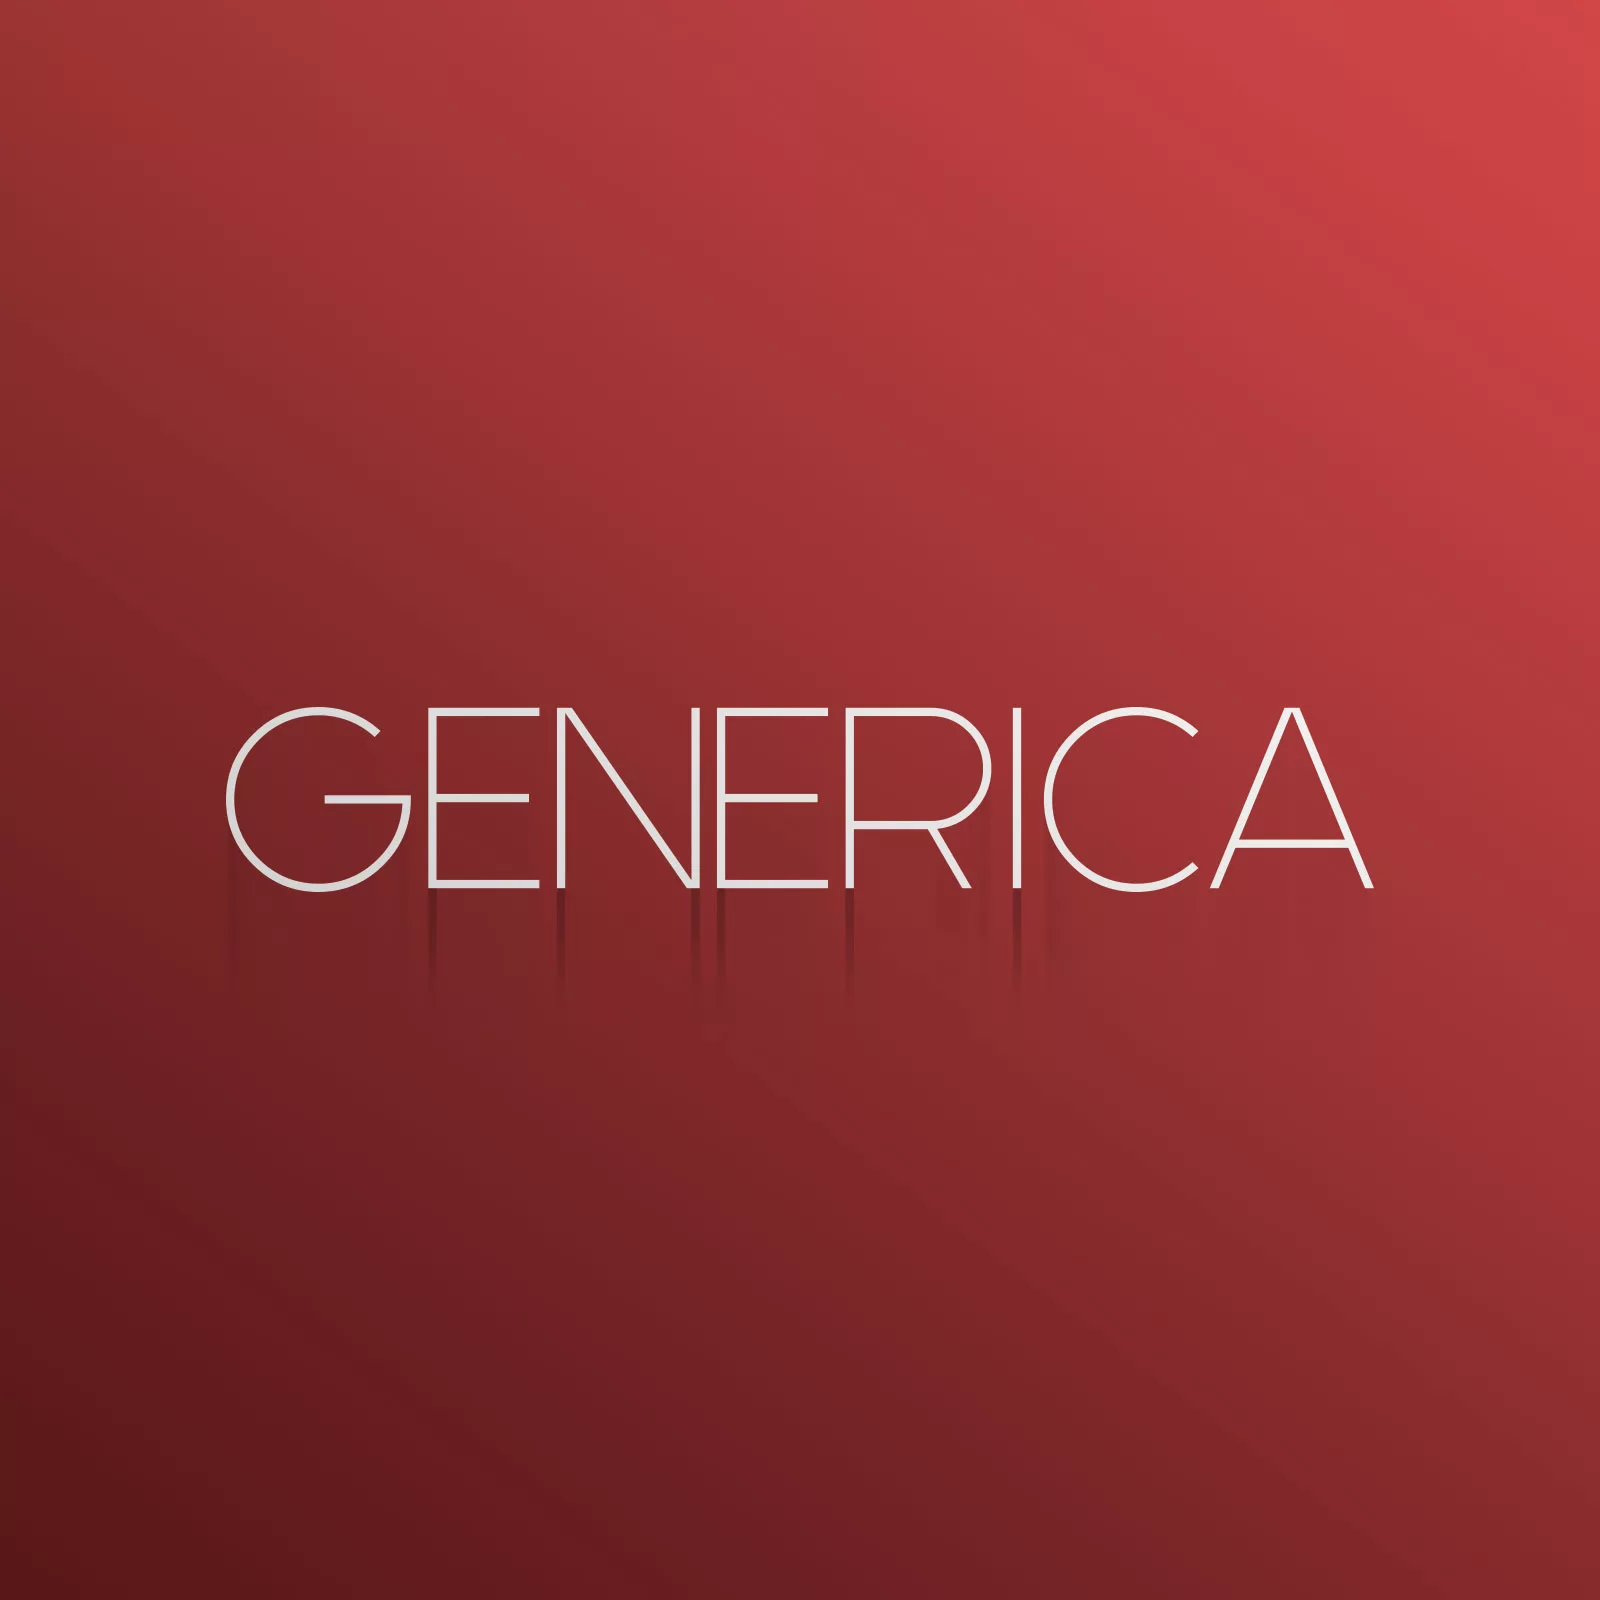 generica-title-card-1